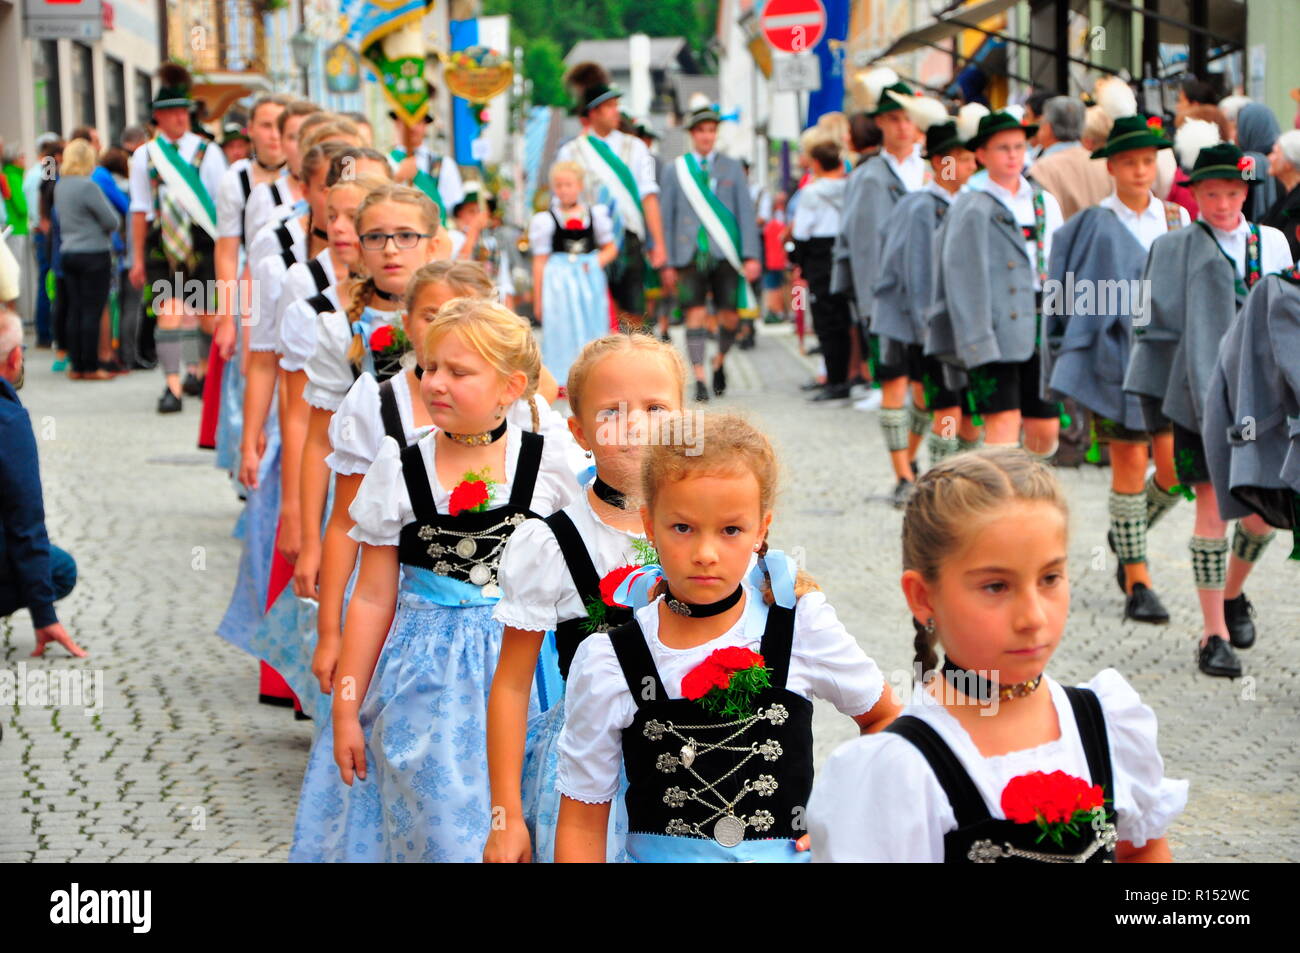 Le ragazze in costume tradizionale sfilata in costume, Werdenfels, Baviera, Germania Foto Stock